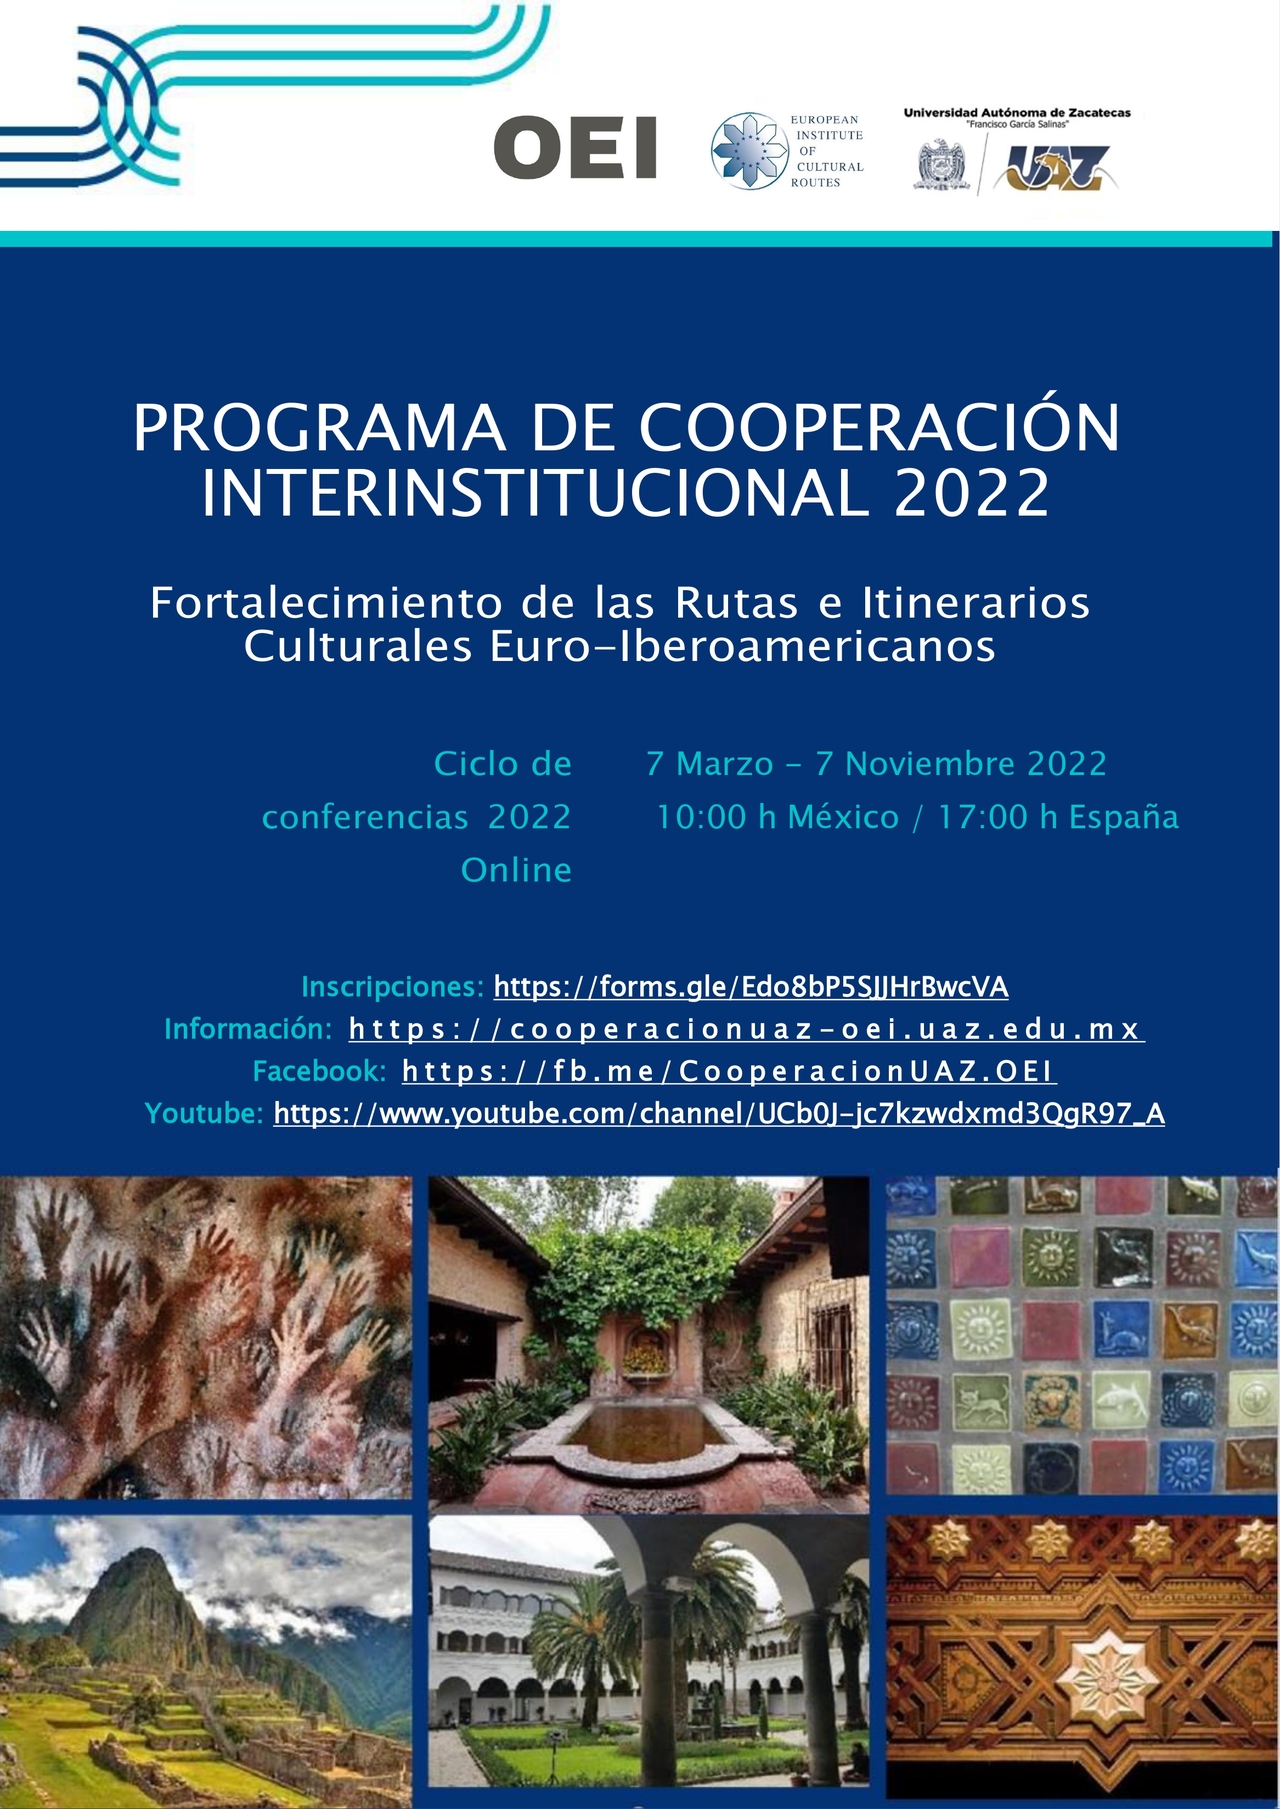 1ª. Conferencia del Ciclo para el fortalecimiento de las Rutas e Itinerarios Culturales Euro-Iberoamericanos